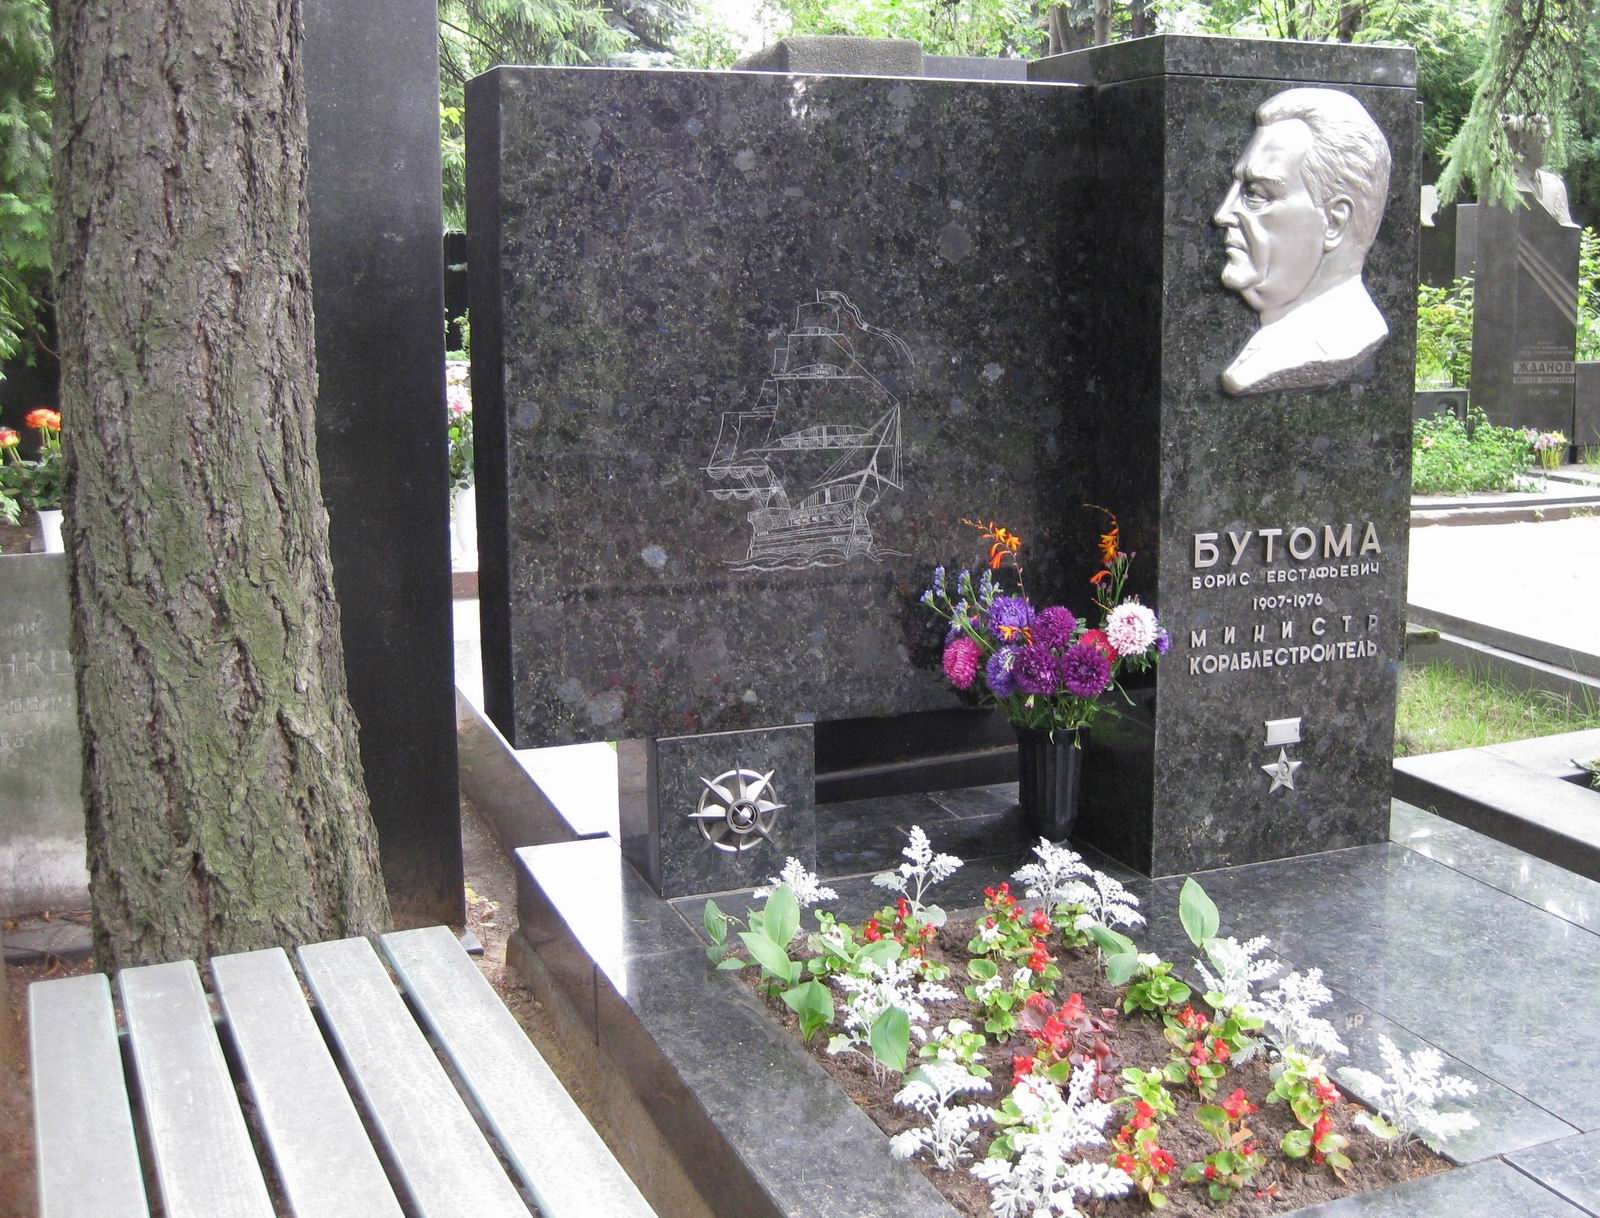 Памятник на могиле Бутомы Б.Е. (1907-1976), ск. П.Шапиро, арх. С.Григорьев, на Новодевичьем кладбище (6-28-4).